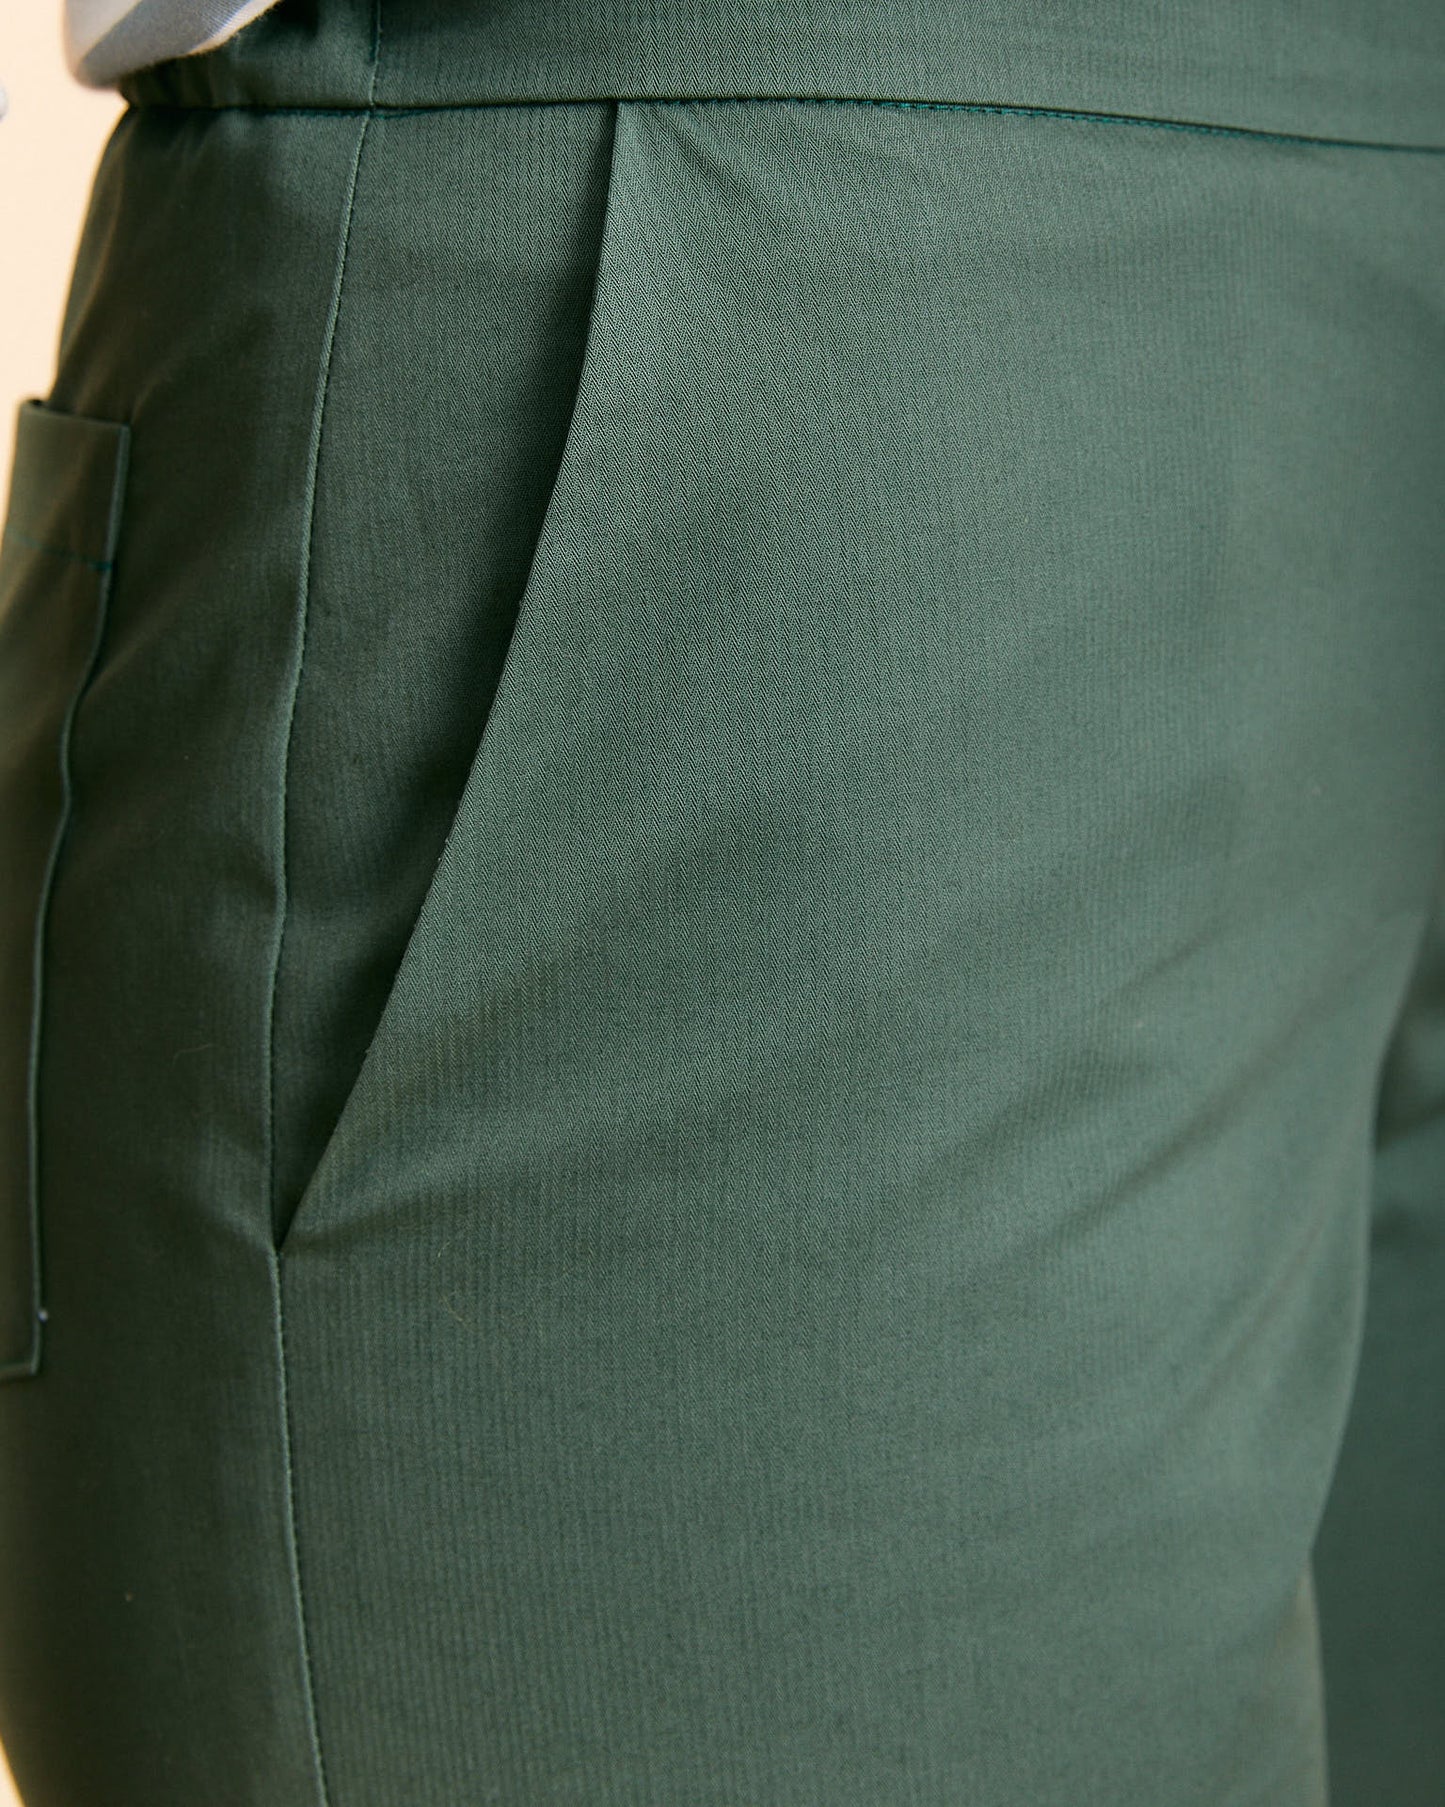 Un pantalone con uno stile più fitted realizzato in cotone 100% color verde timo.  Il pantalone Ninfa ha una vestibilità regolare, che segue il corpo nella zona del bacino e scende dritto sulla gamba. Il cinturino ha elastico sul retro e una cerniera sul fianco per adattarsi al meglio alla tua taglia.  Oltre alle tasche alla francese sul davanti ha due tasche applicate sul dietro.